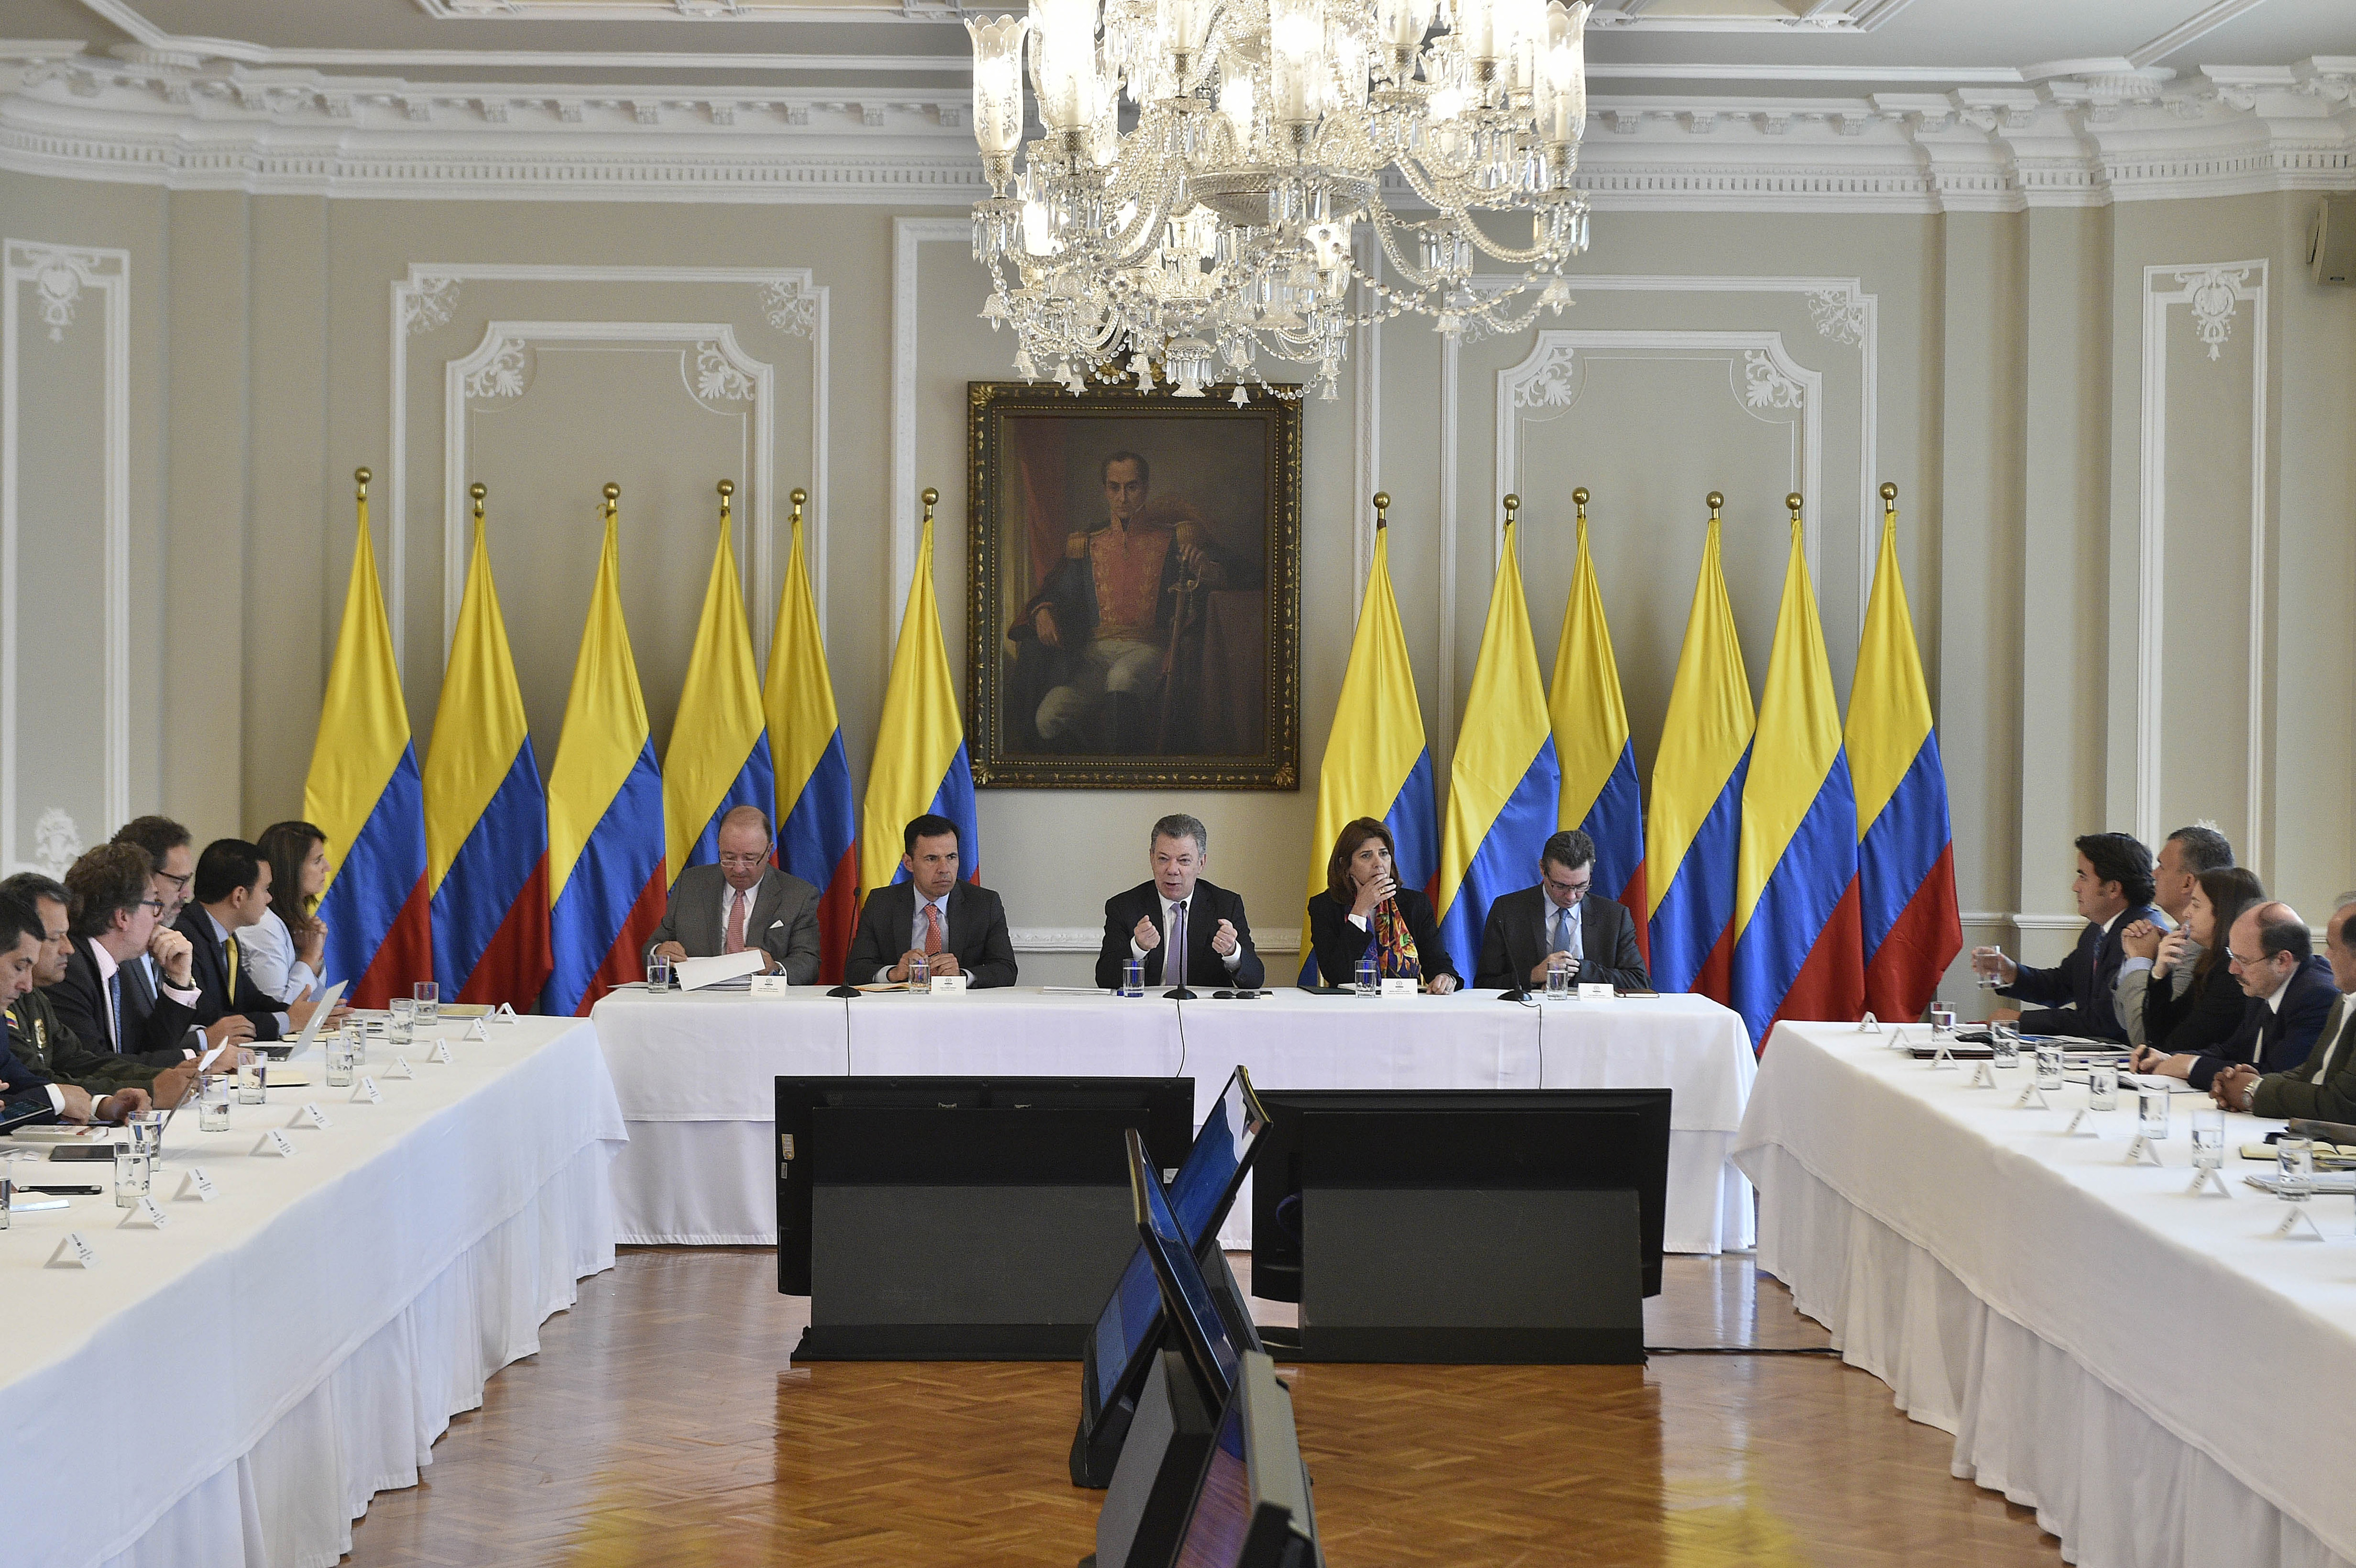 Canciller María Ángela Holguín participó en reunión liderada por Presidente Juan Manuel Santos con gobernadores y alcaldes de la zona de frontera